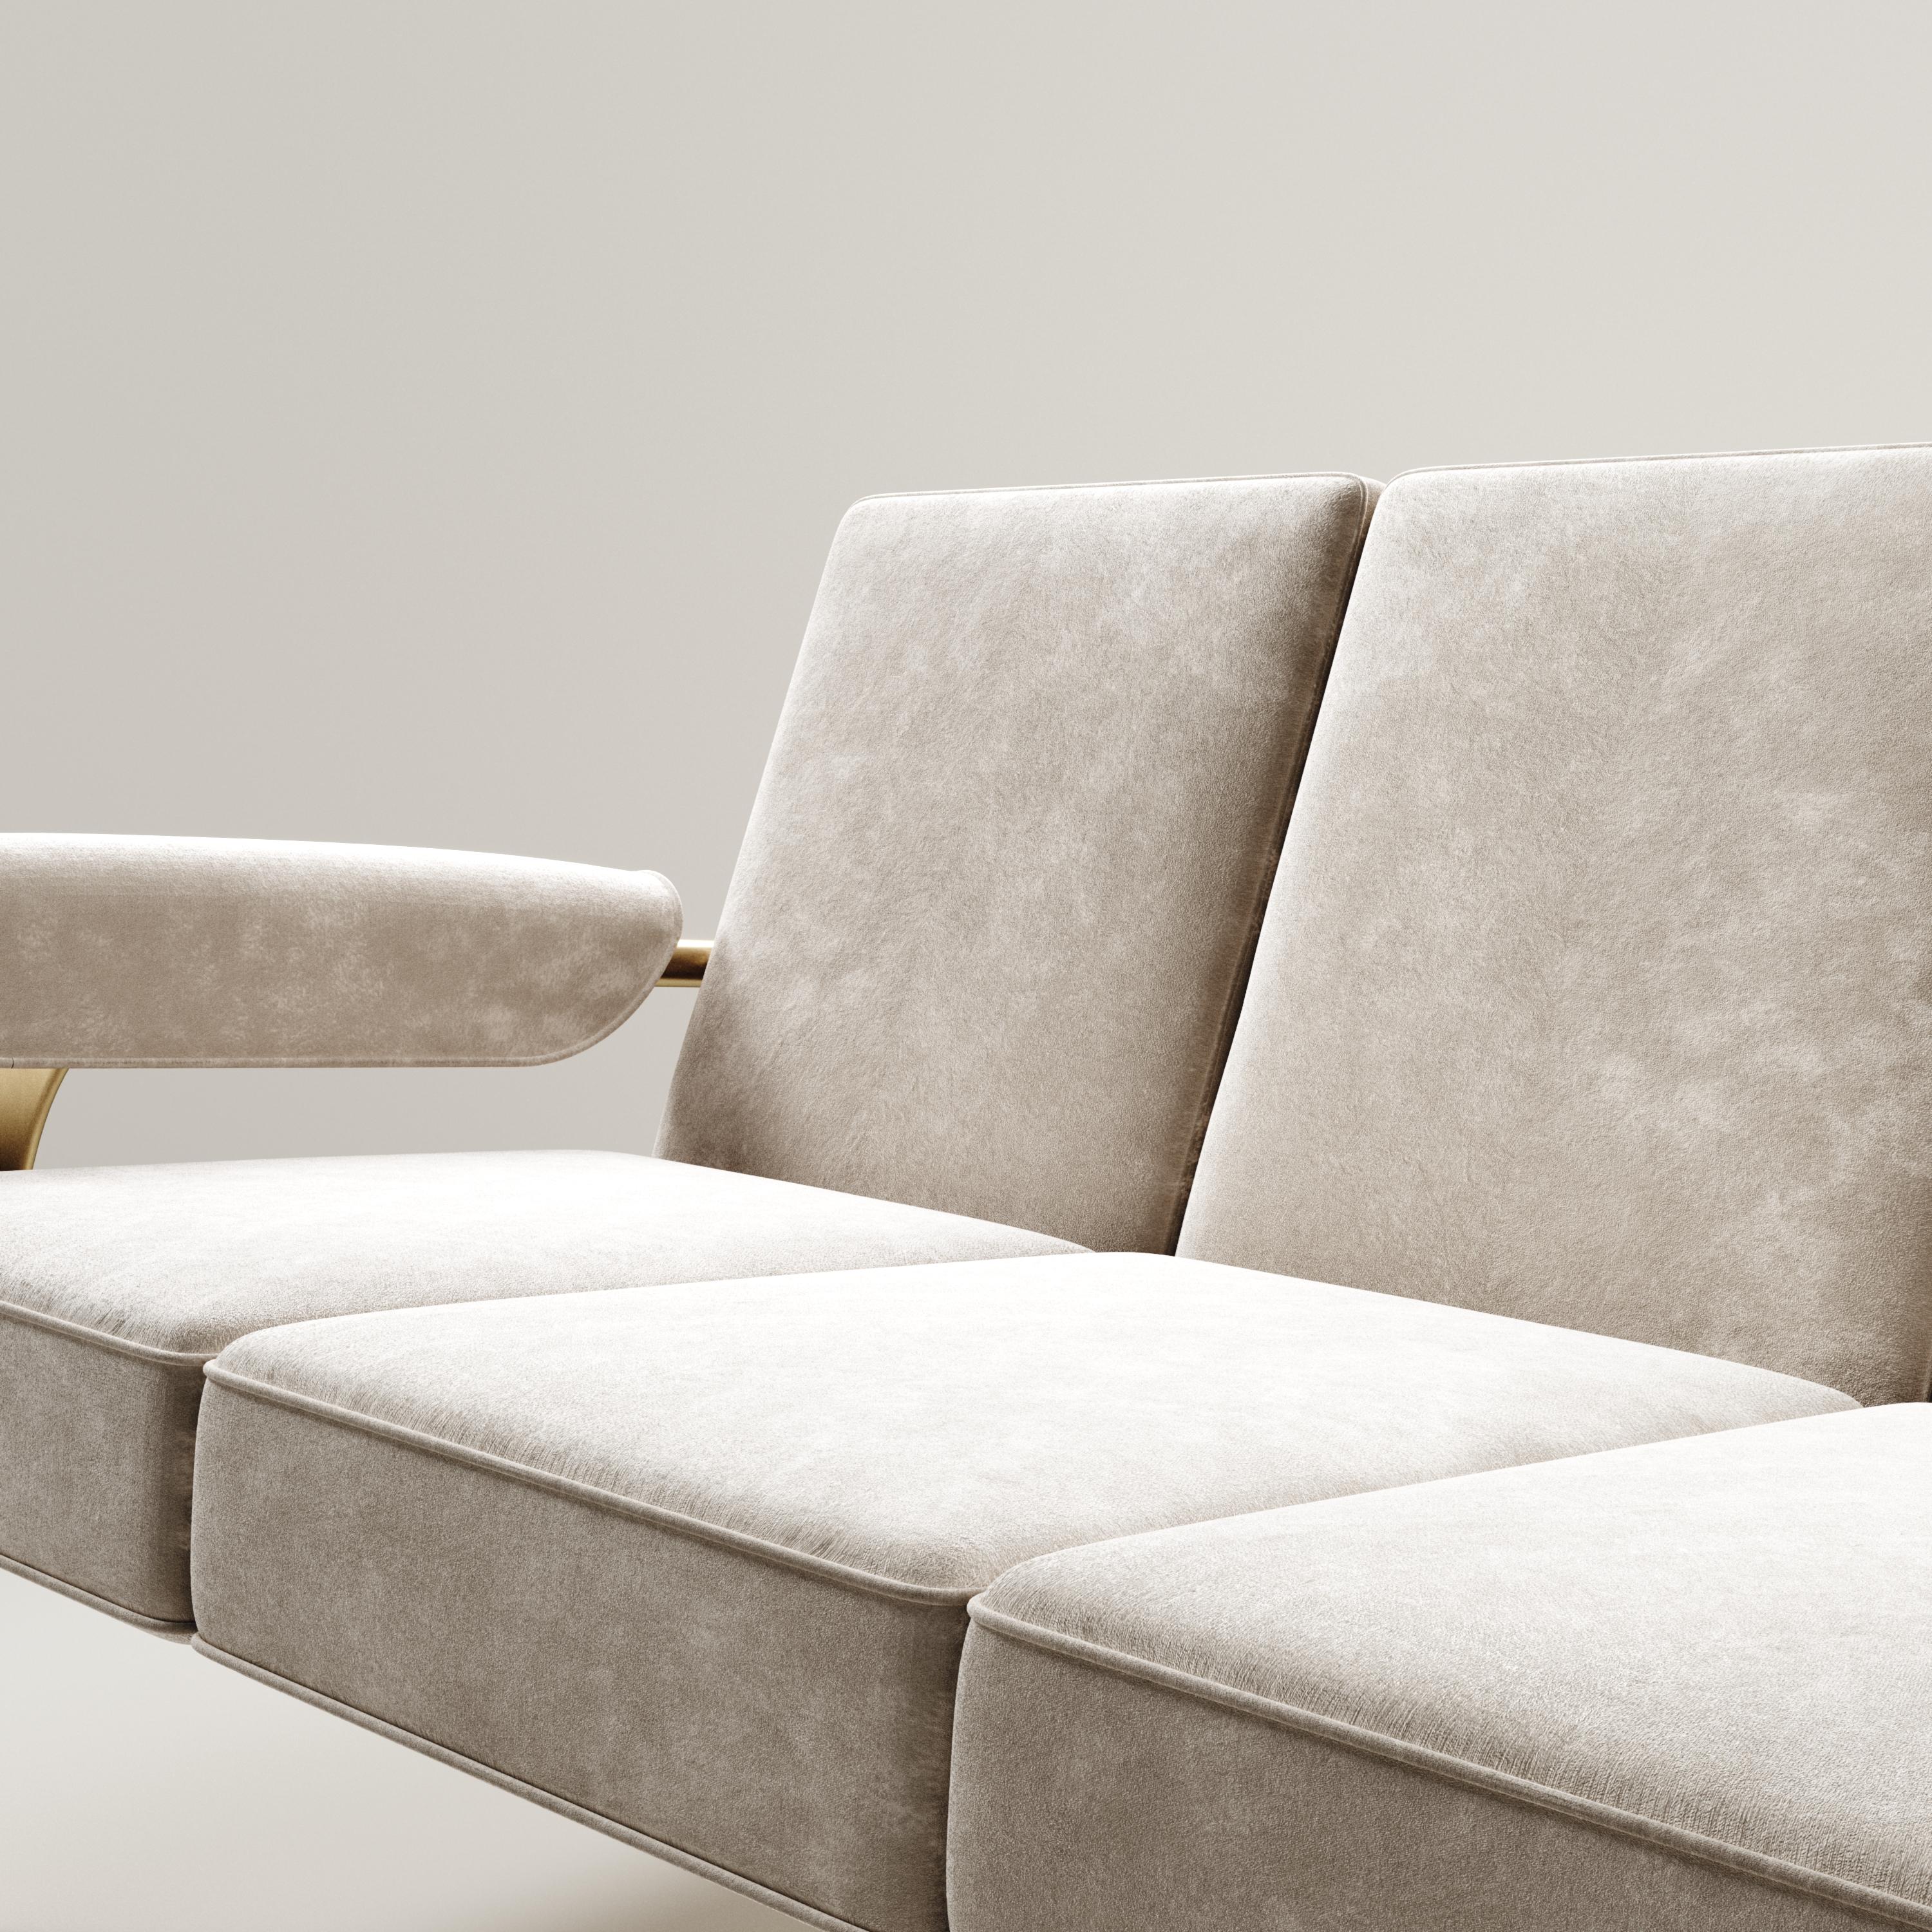 Das Sofa Ramo von R & Y Augousti ist ein elegantes und vielseitiges Möbelstück. Die Polstermöbel bieten Komfort und bewahren mit dem Gestell und den Details aus Messing in Bronze-Patina eine einzigartige Ästhetik. Dieses Angebot ist für